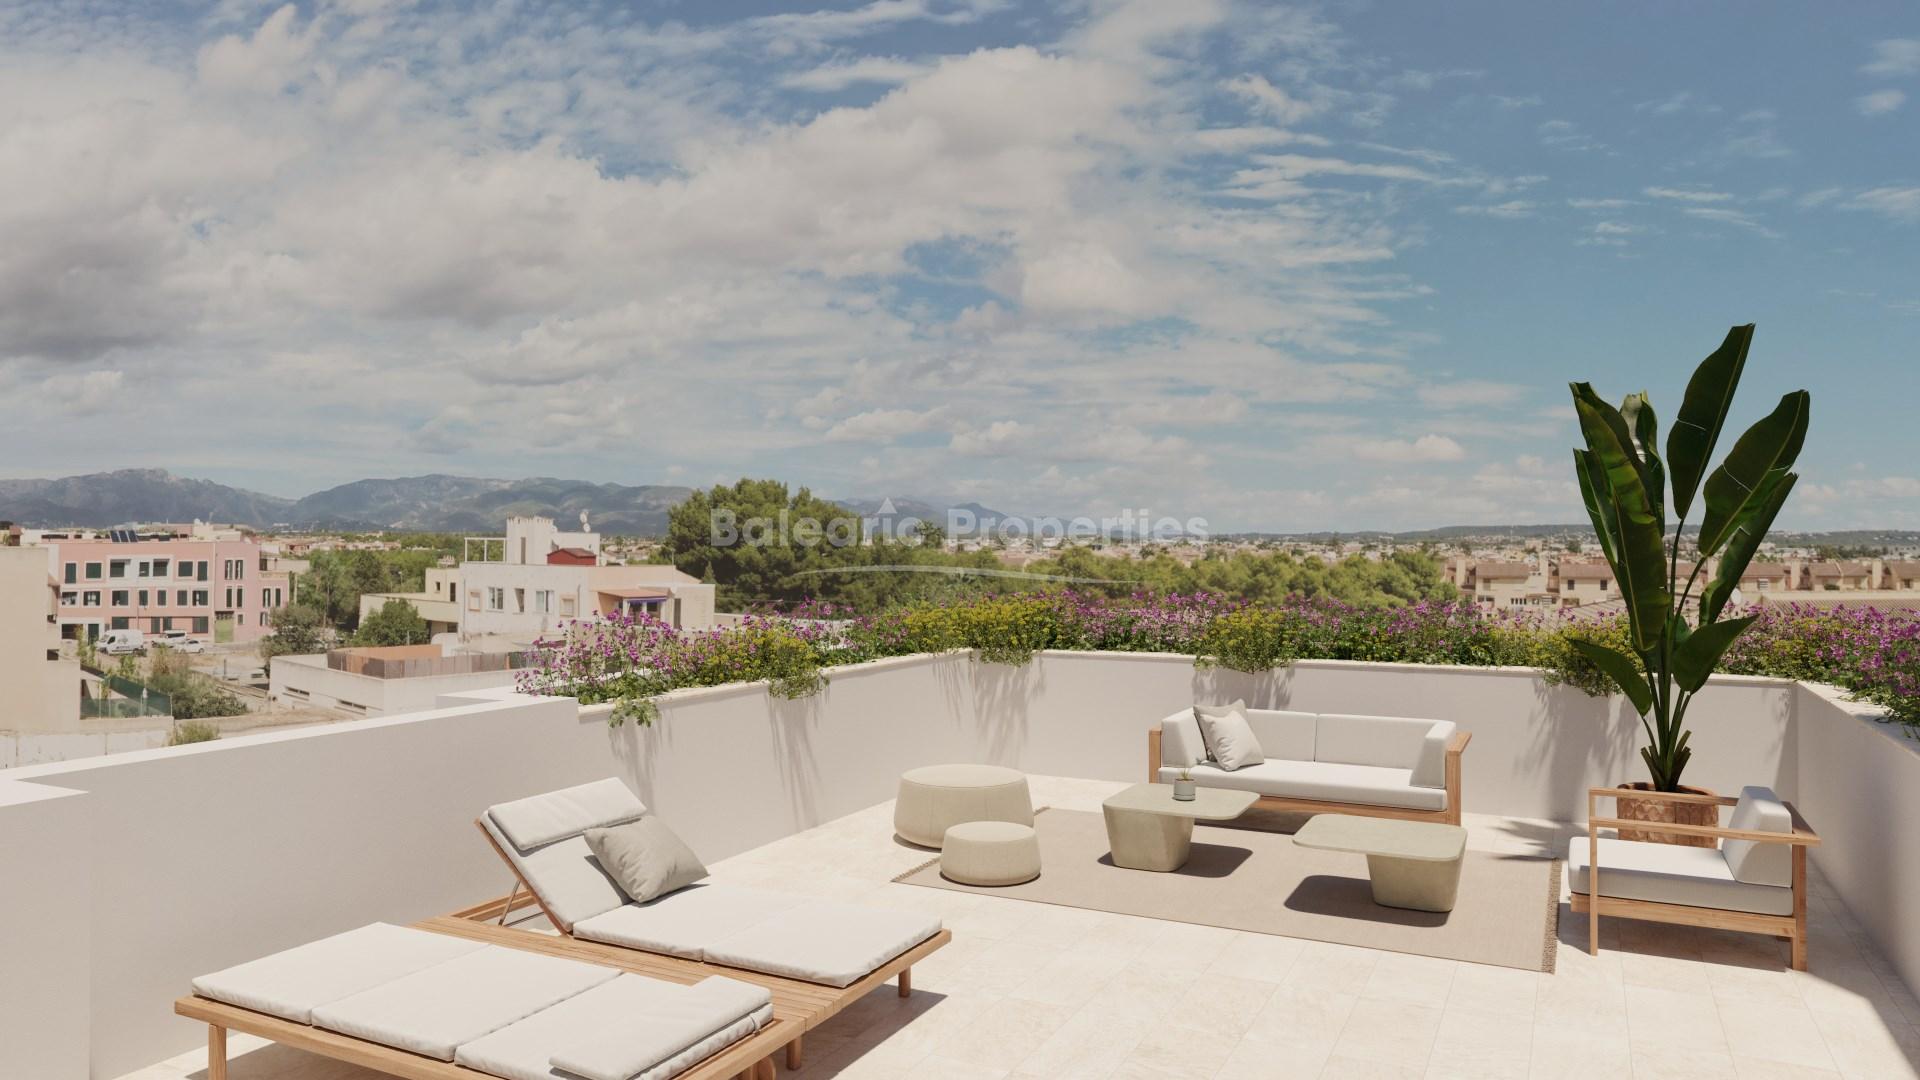 Exclusivos y modernos apartamentos en venta en Marratxi cerca de Palma, Mallorca